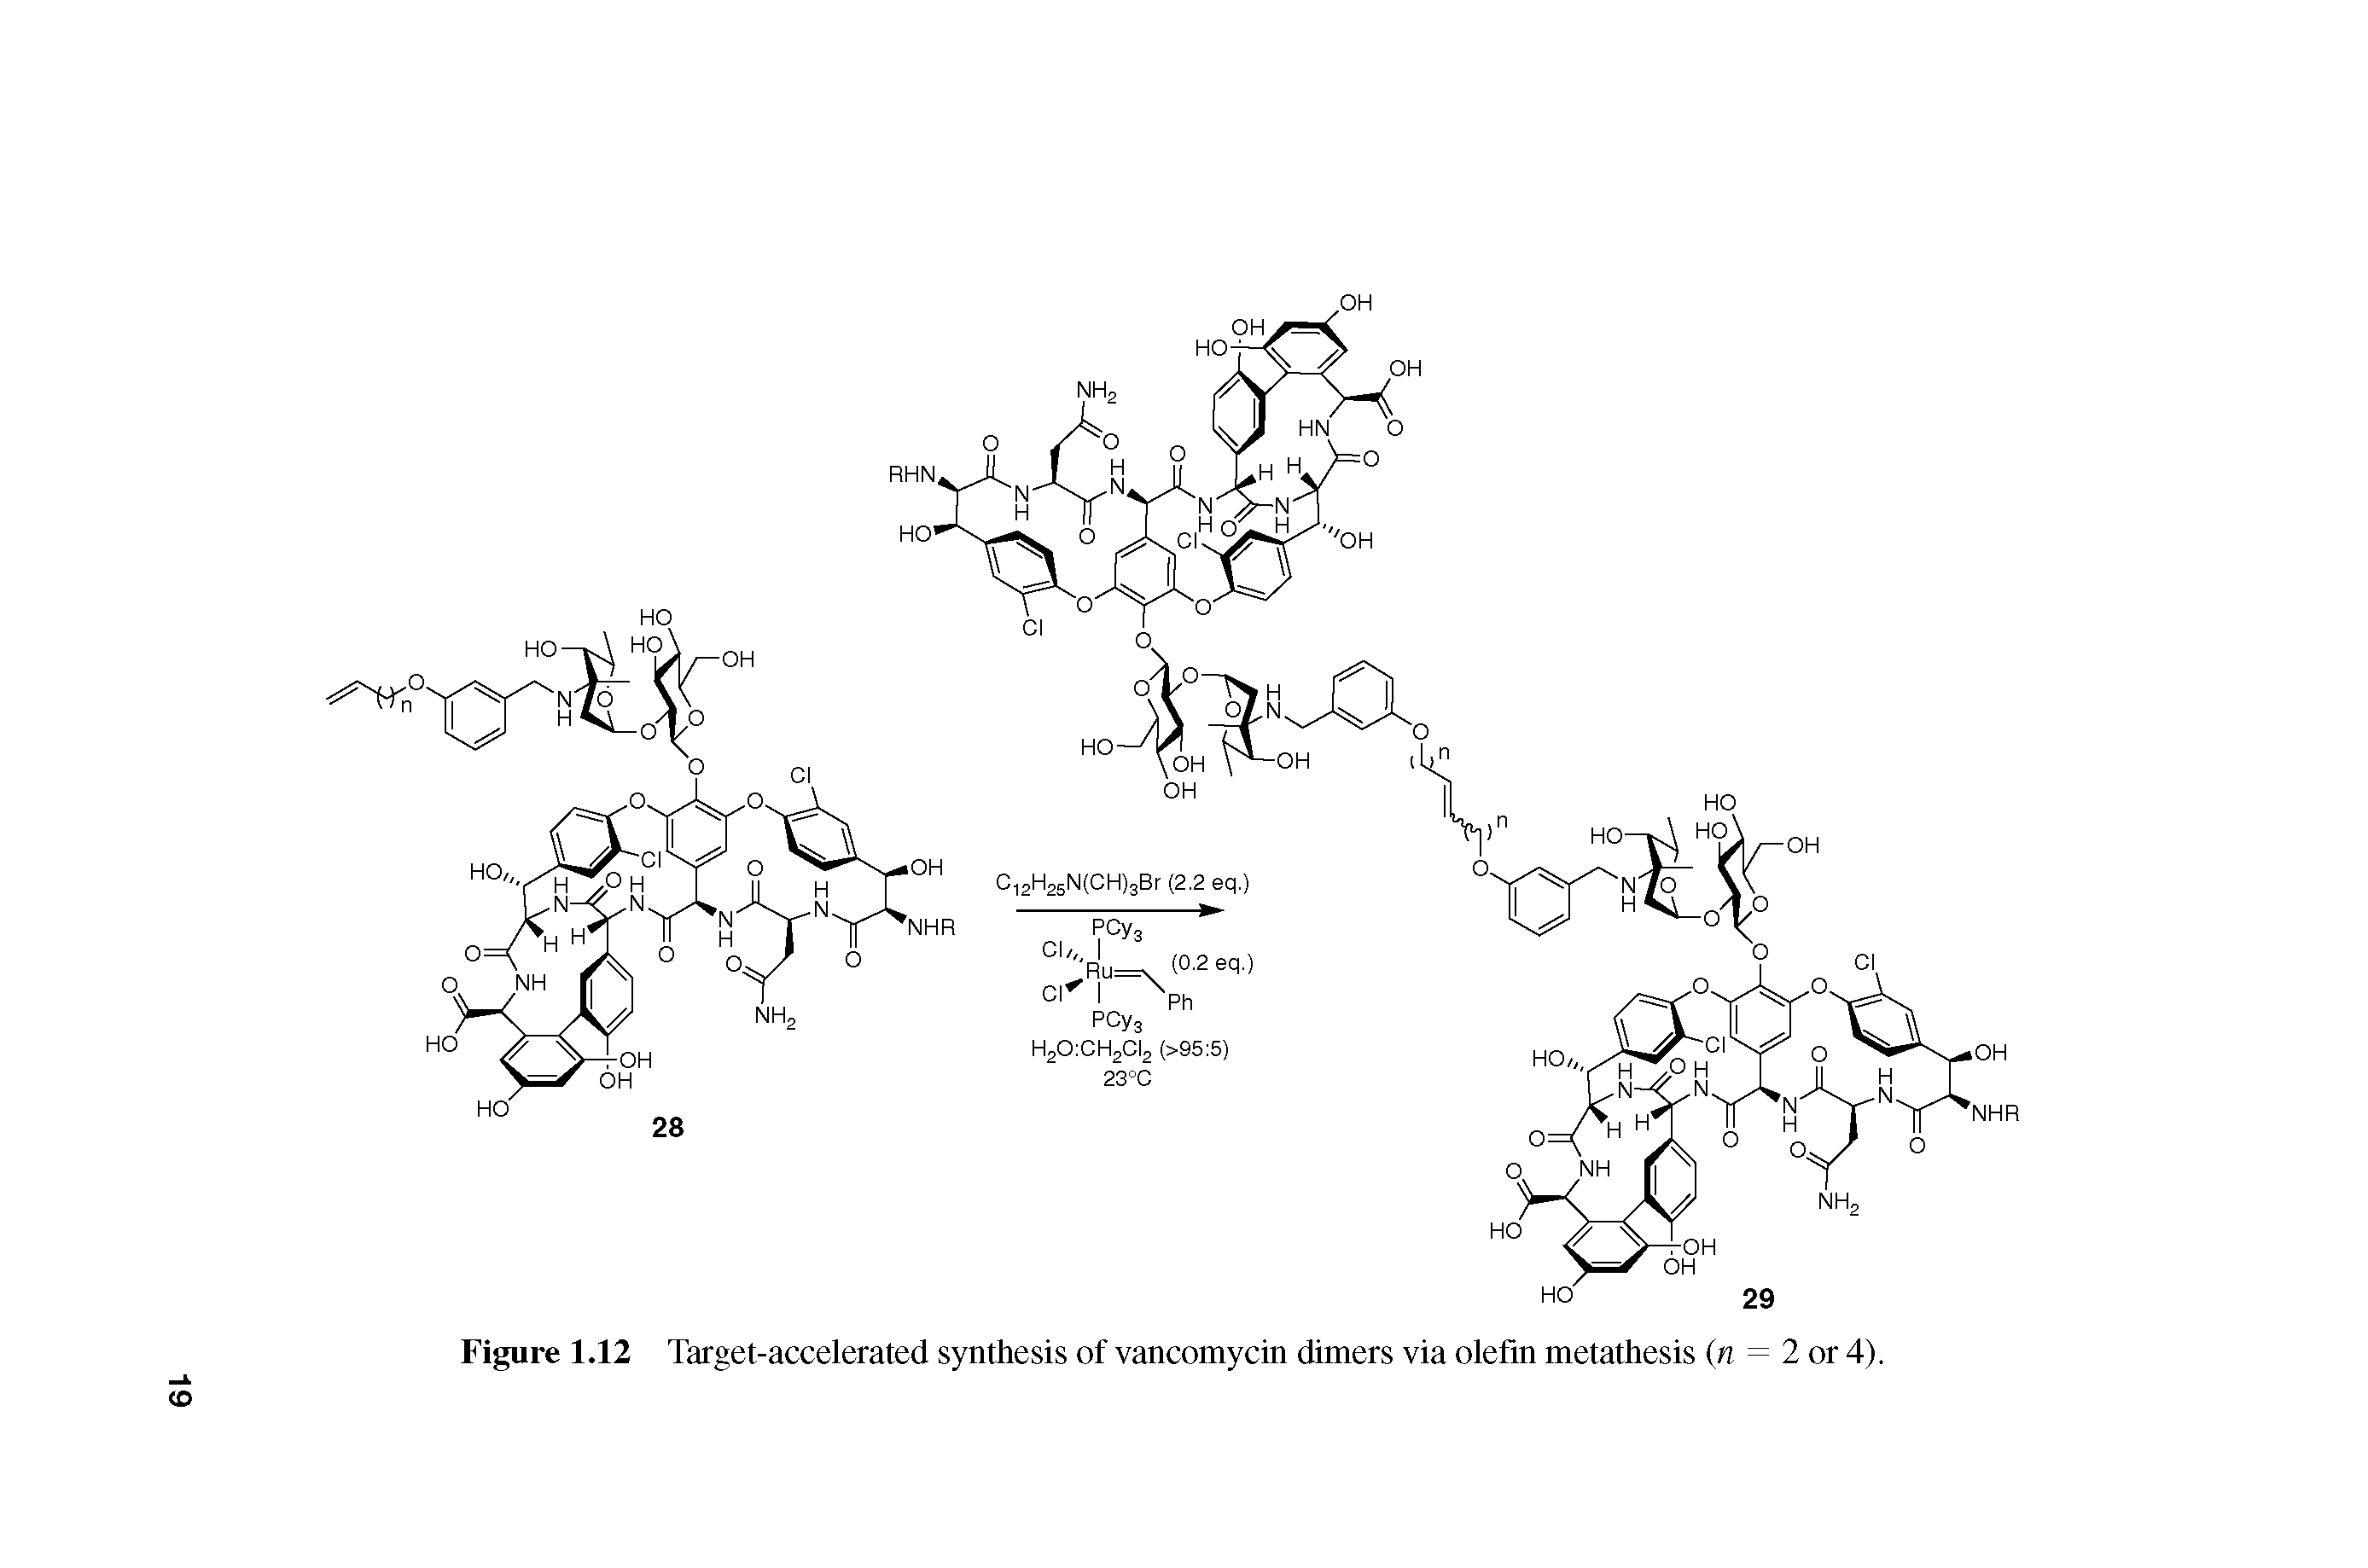 Figure 1.12 Target-accelerated synthesis of vancomycin dimers via olefin metathesis (n = 2 or 4).